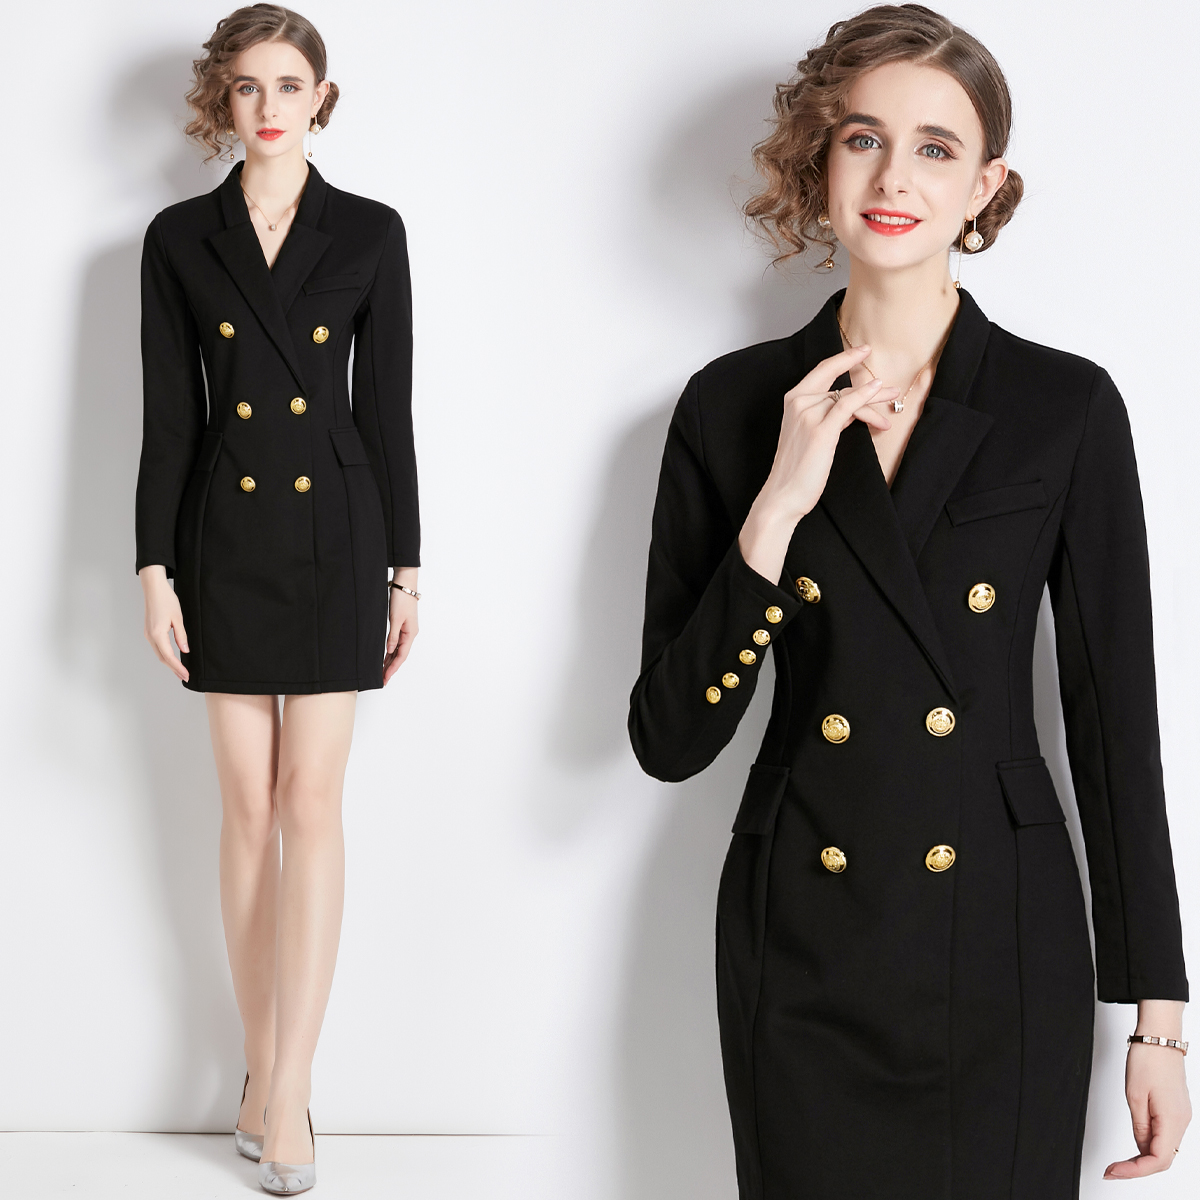 Slim France style dress cotton rome business suit